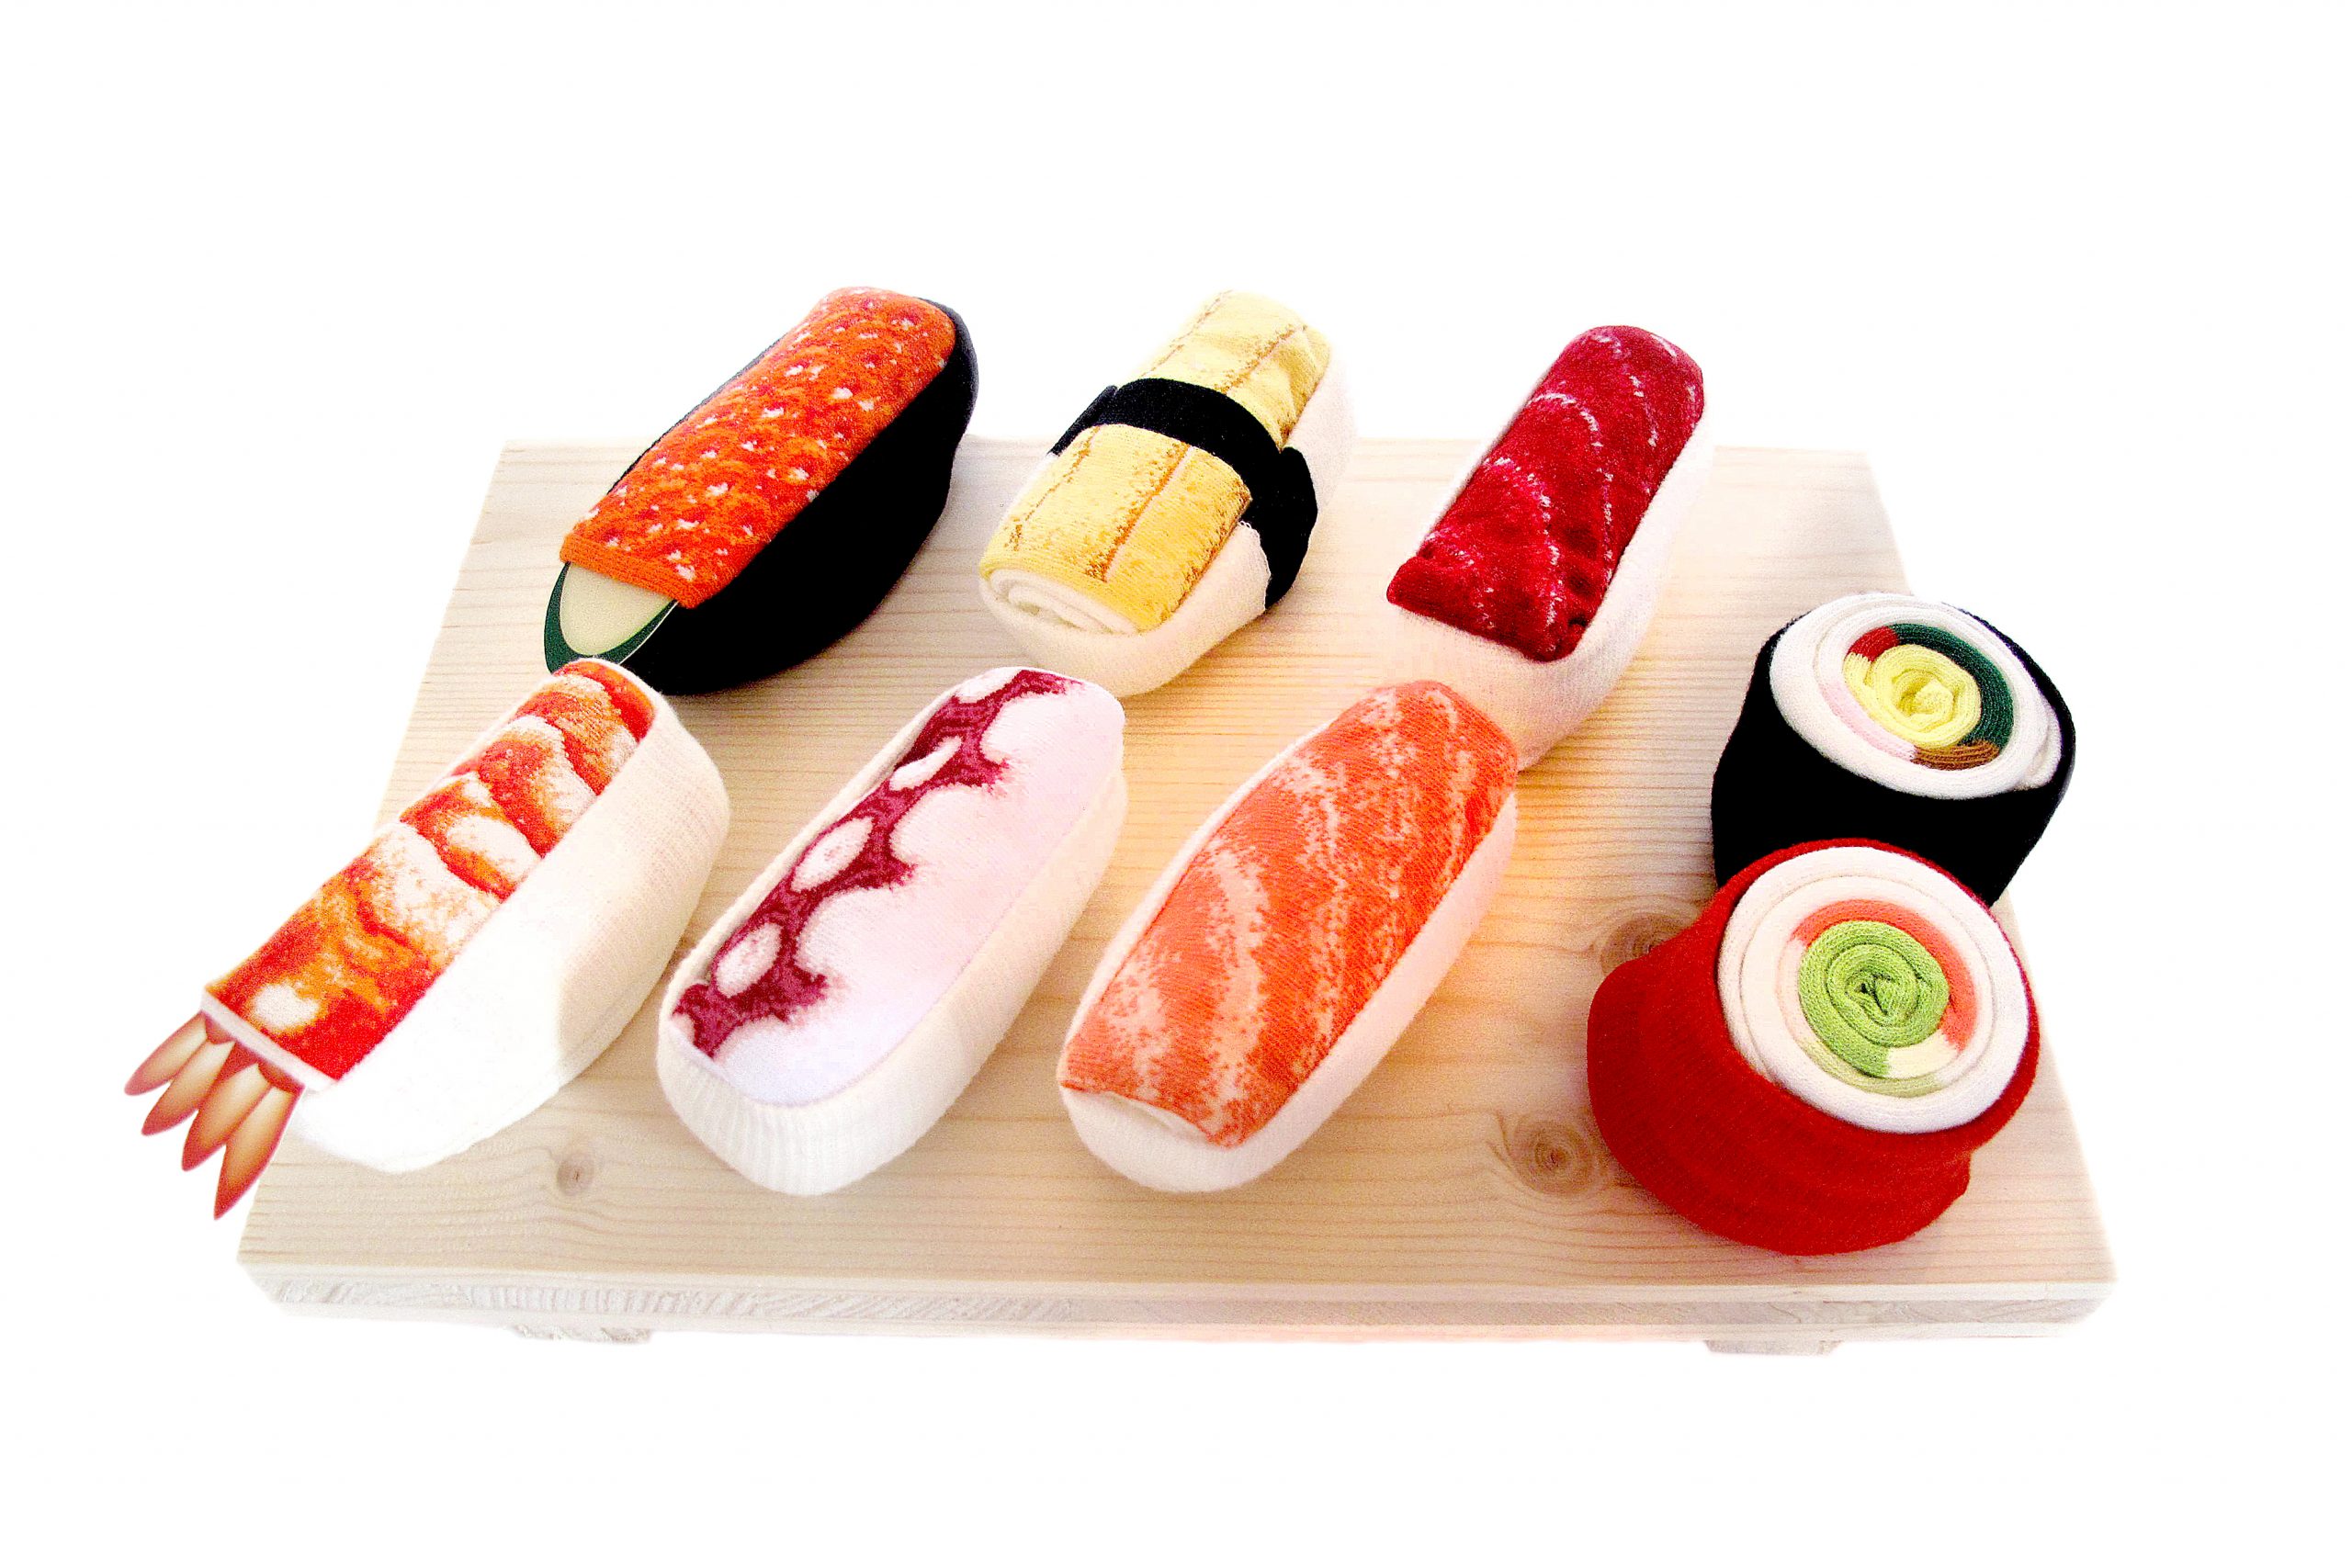 ヨーロッパ市場 売れる 欧米 生活習慣 文化 寿司ネタ